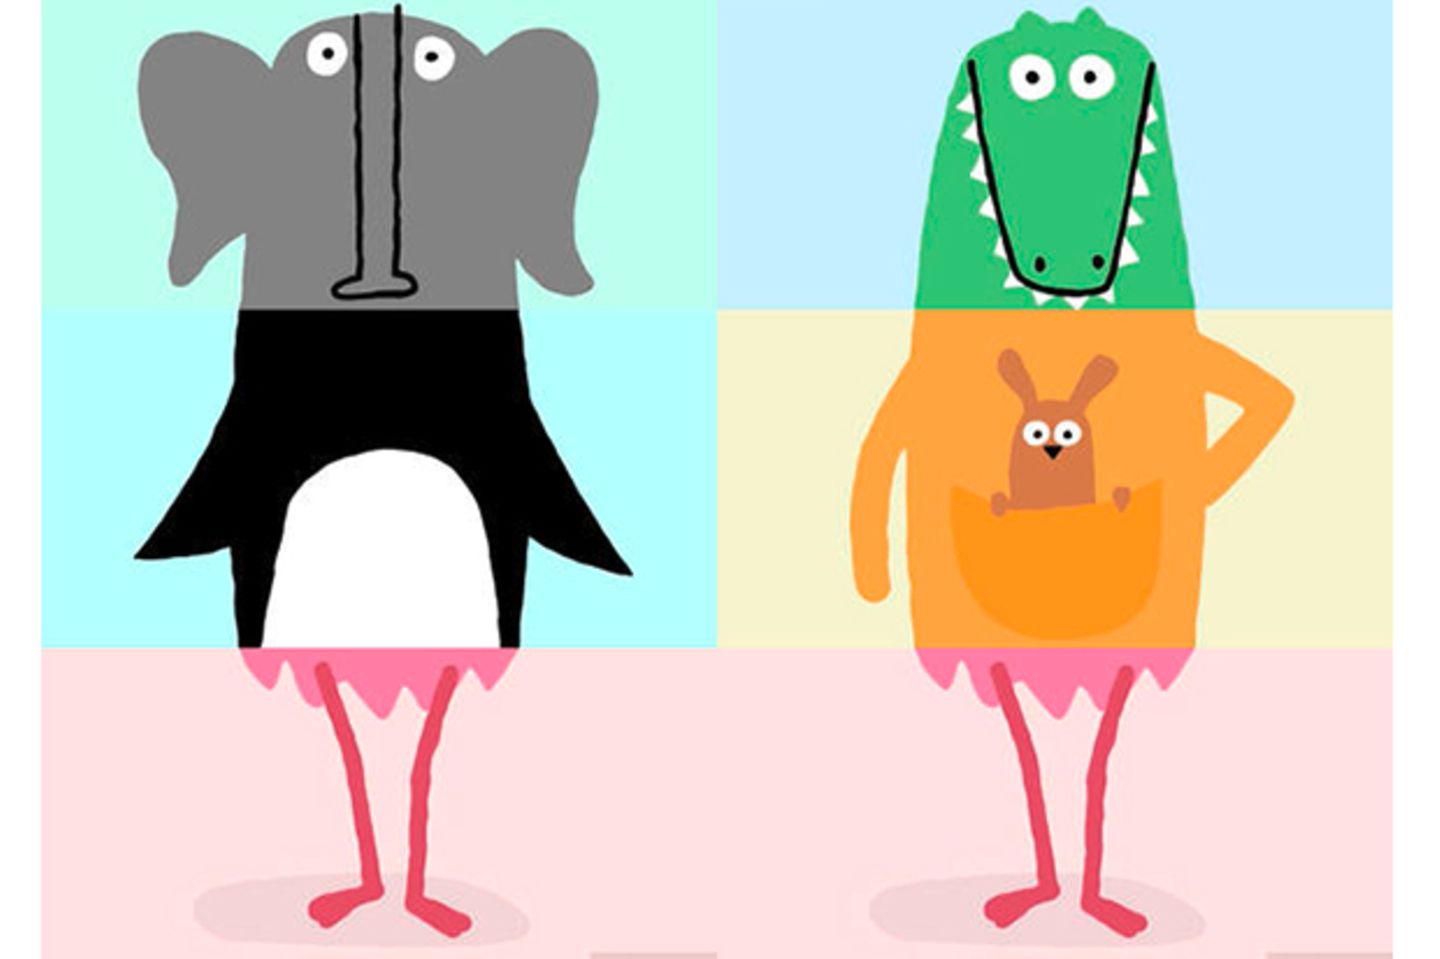 Vom Pinguin der Kopf, in der Mitte ein Bärenbauch und unten Flamingo-Stelzen: Solche Klappbilderbücher lieben schon die Kleinsten. Diese digitale Variante bringt Kinder und Eltern mit handgezeichneten Tieren und lustigen Animationen zum Lachen.    „Miximal“ für iOS, von Lucas Zanotto, 2,99 Euro.